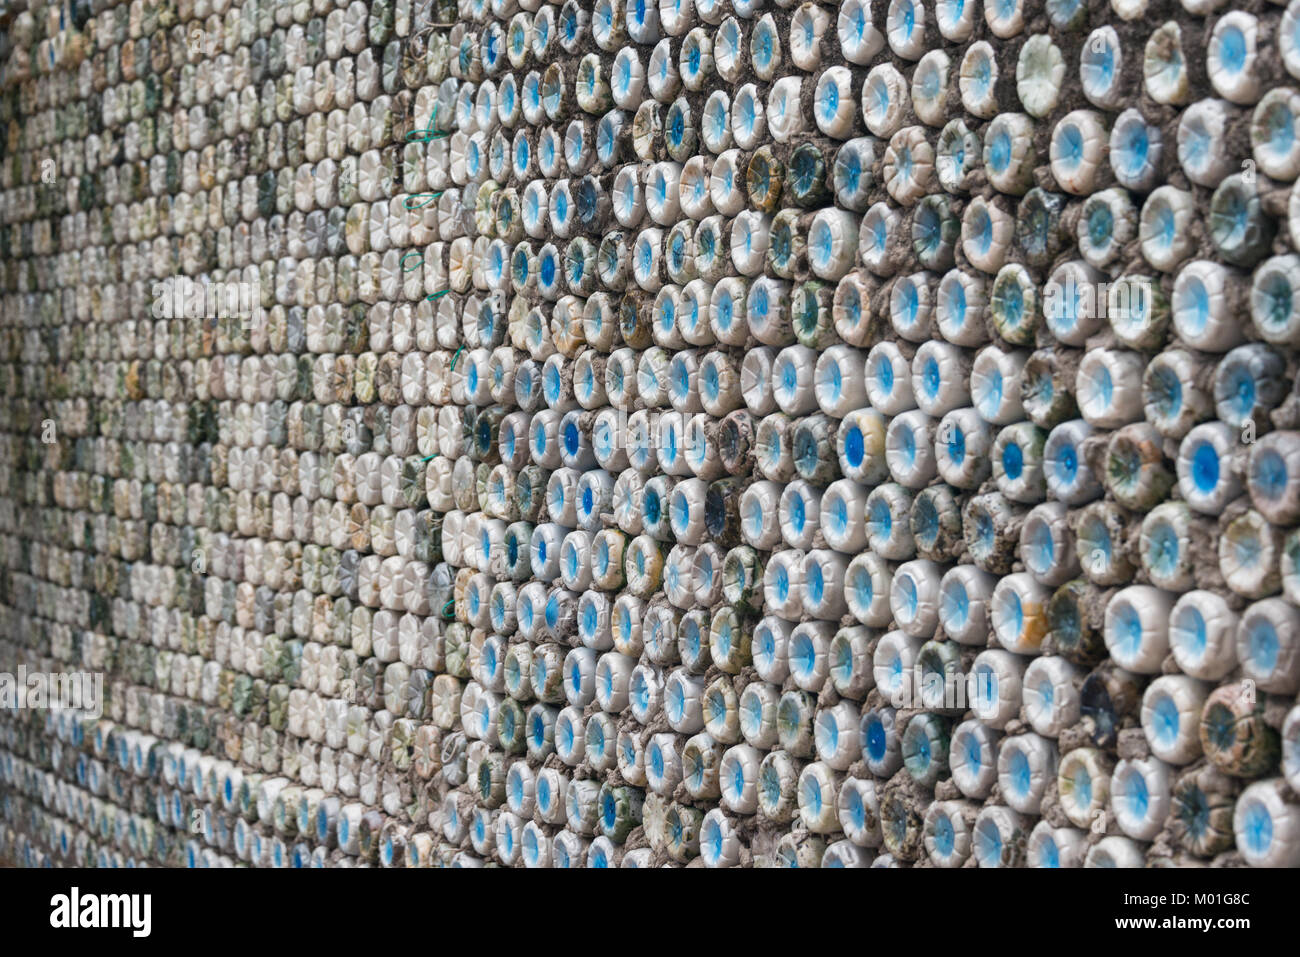 Recyclage de bouteilles : les bouteilles en plastique qui ont été fixés dans le béton pour former un mur de bouteille Banque D'Images